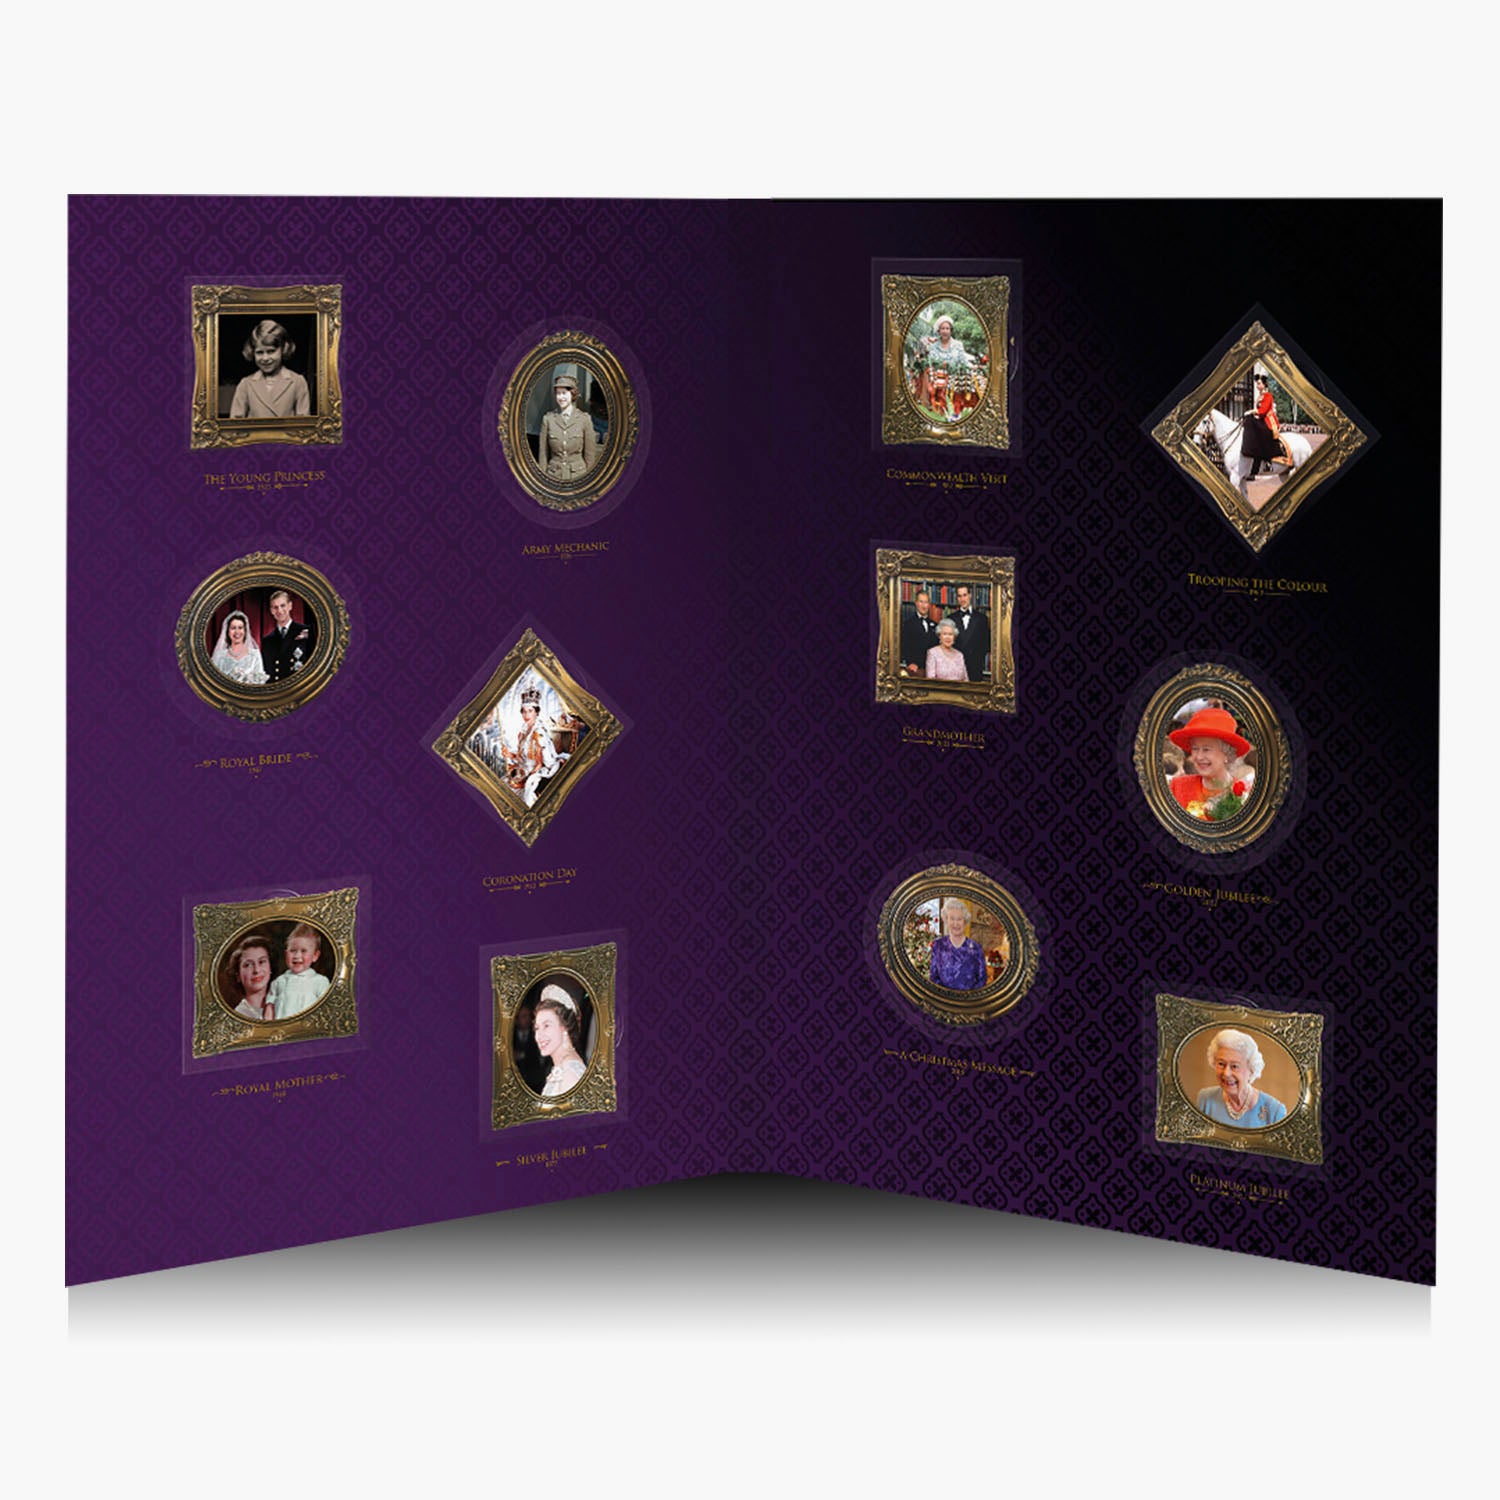 Une vie en portrait - Collection complète de la reine Elizabeth II